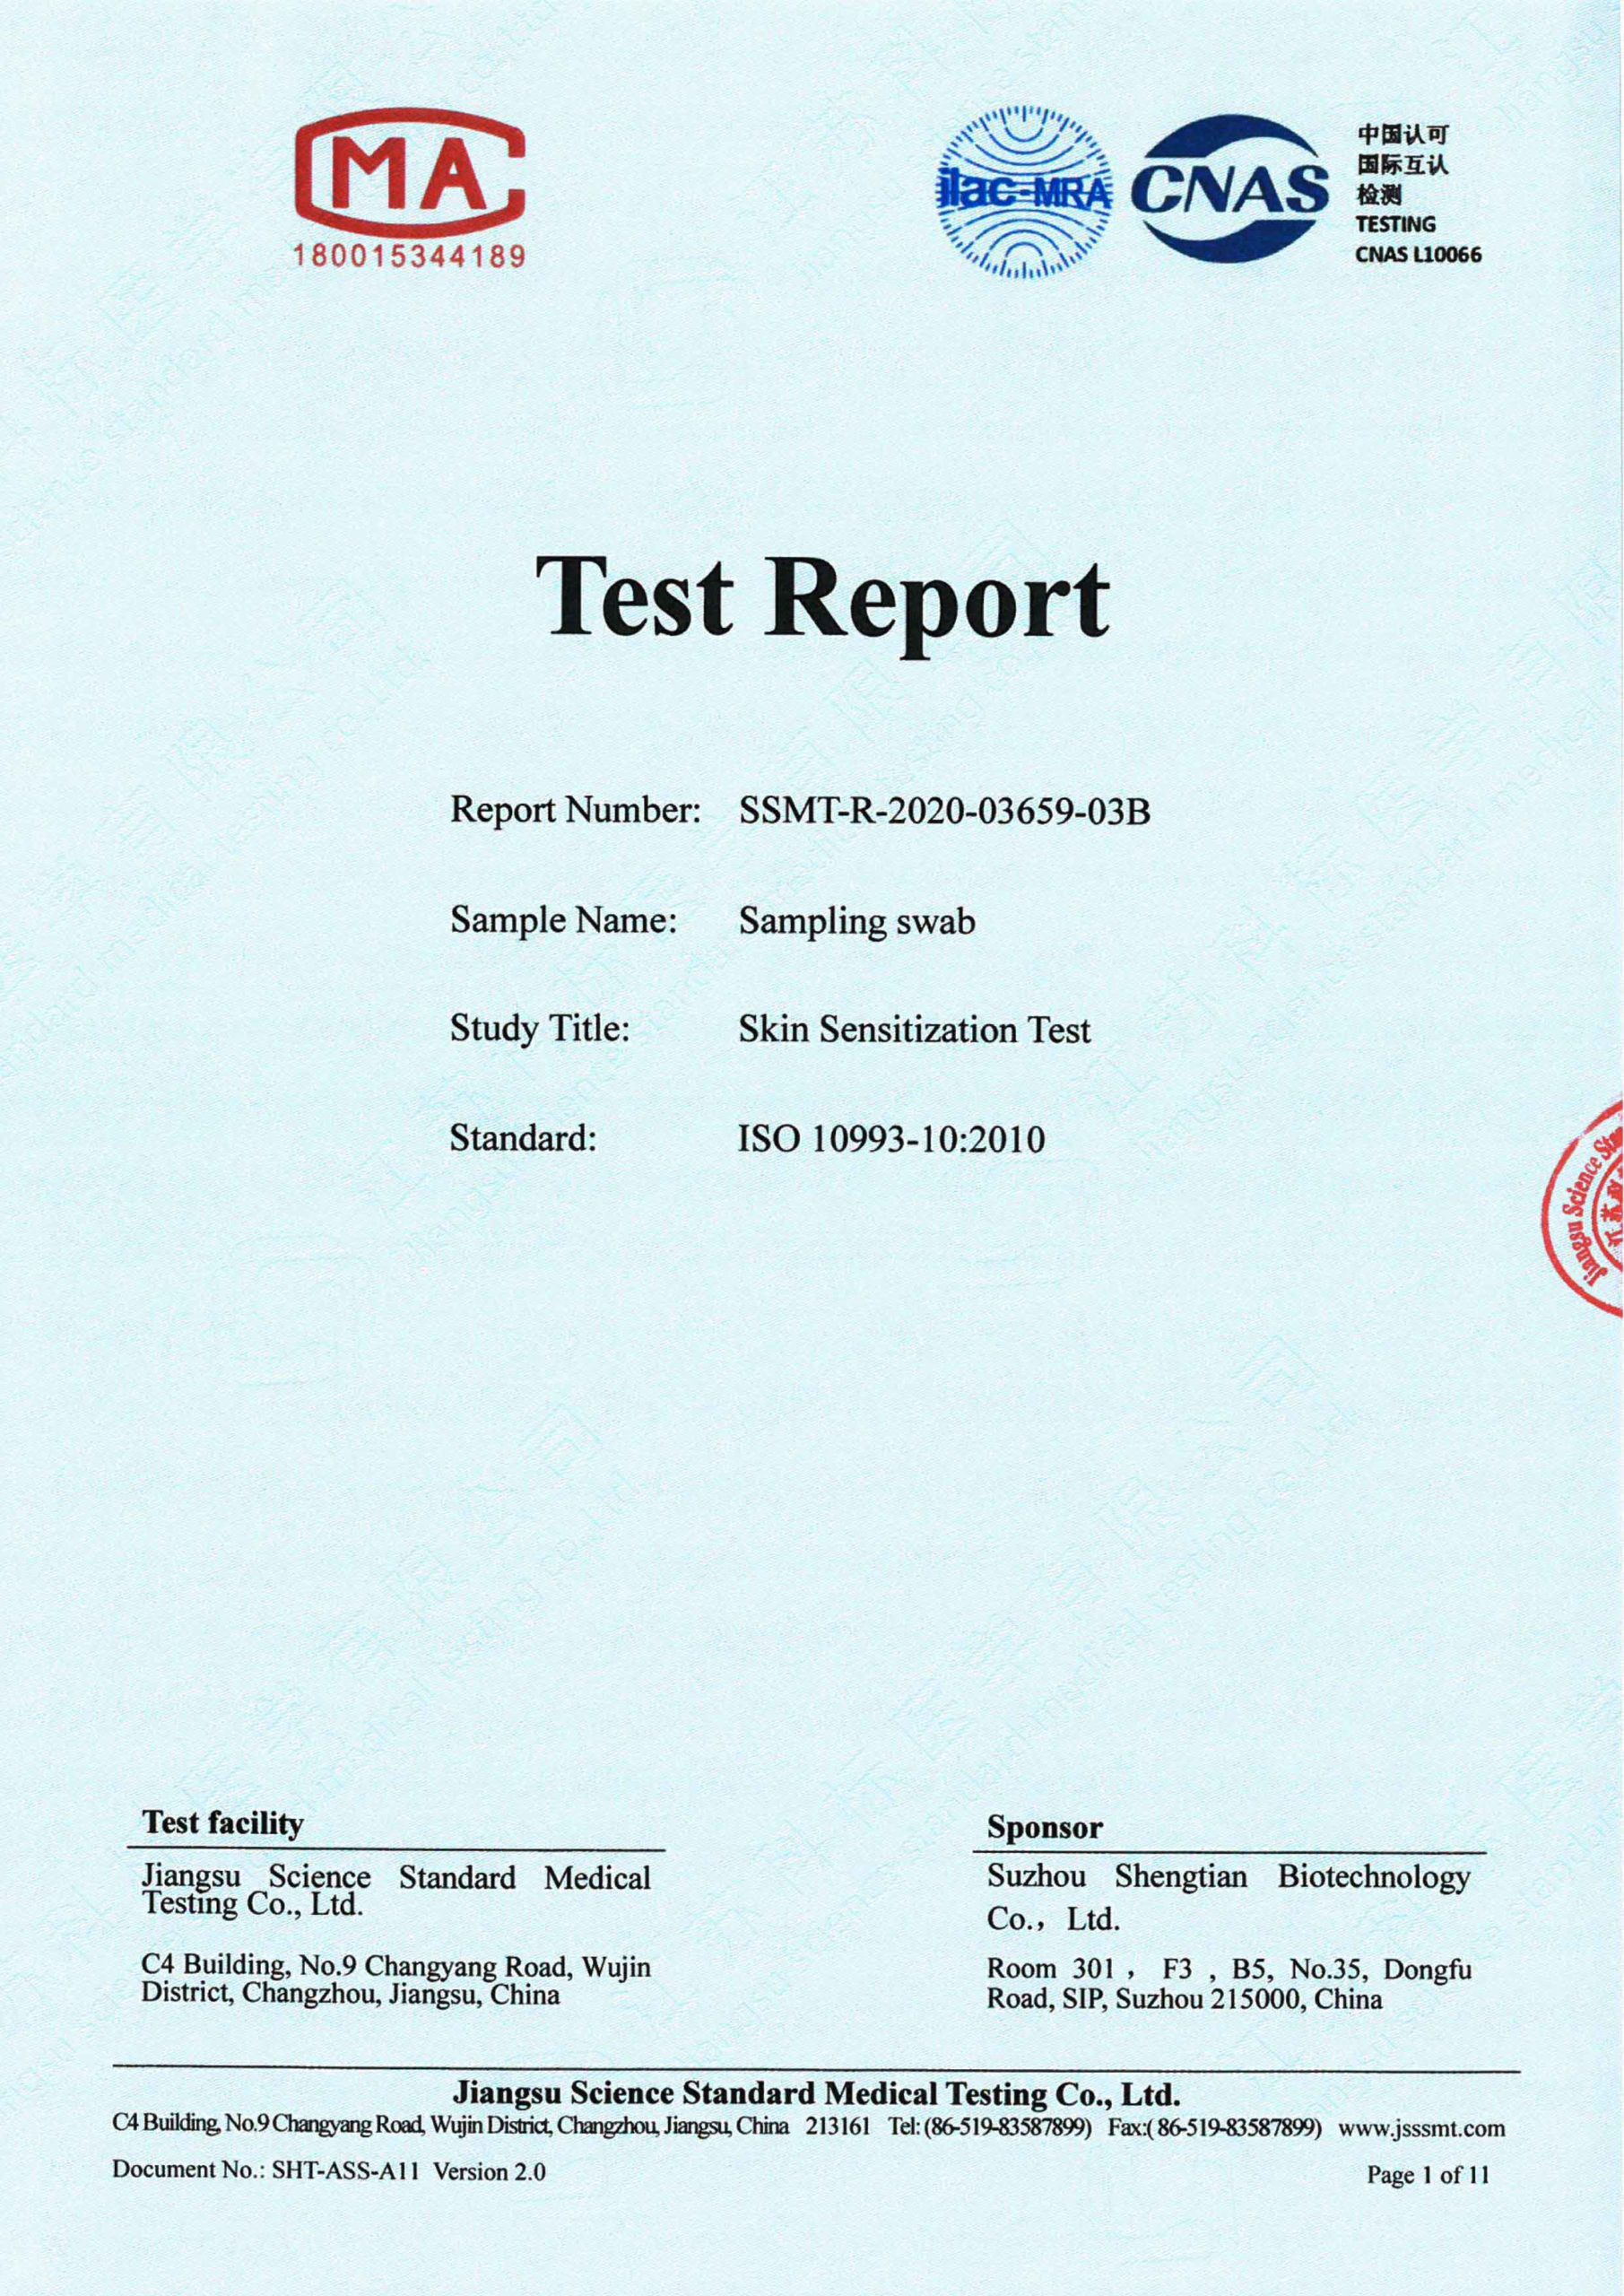 Skin Sensitization Test Certificate